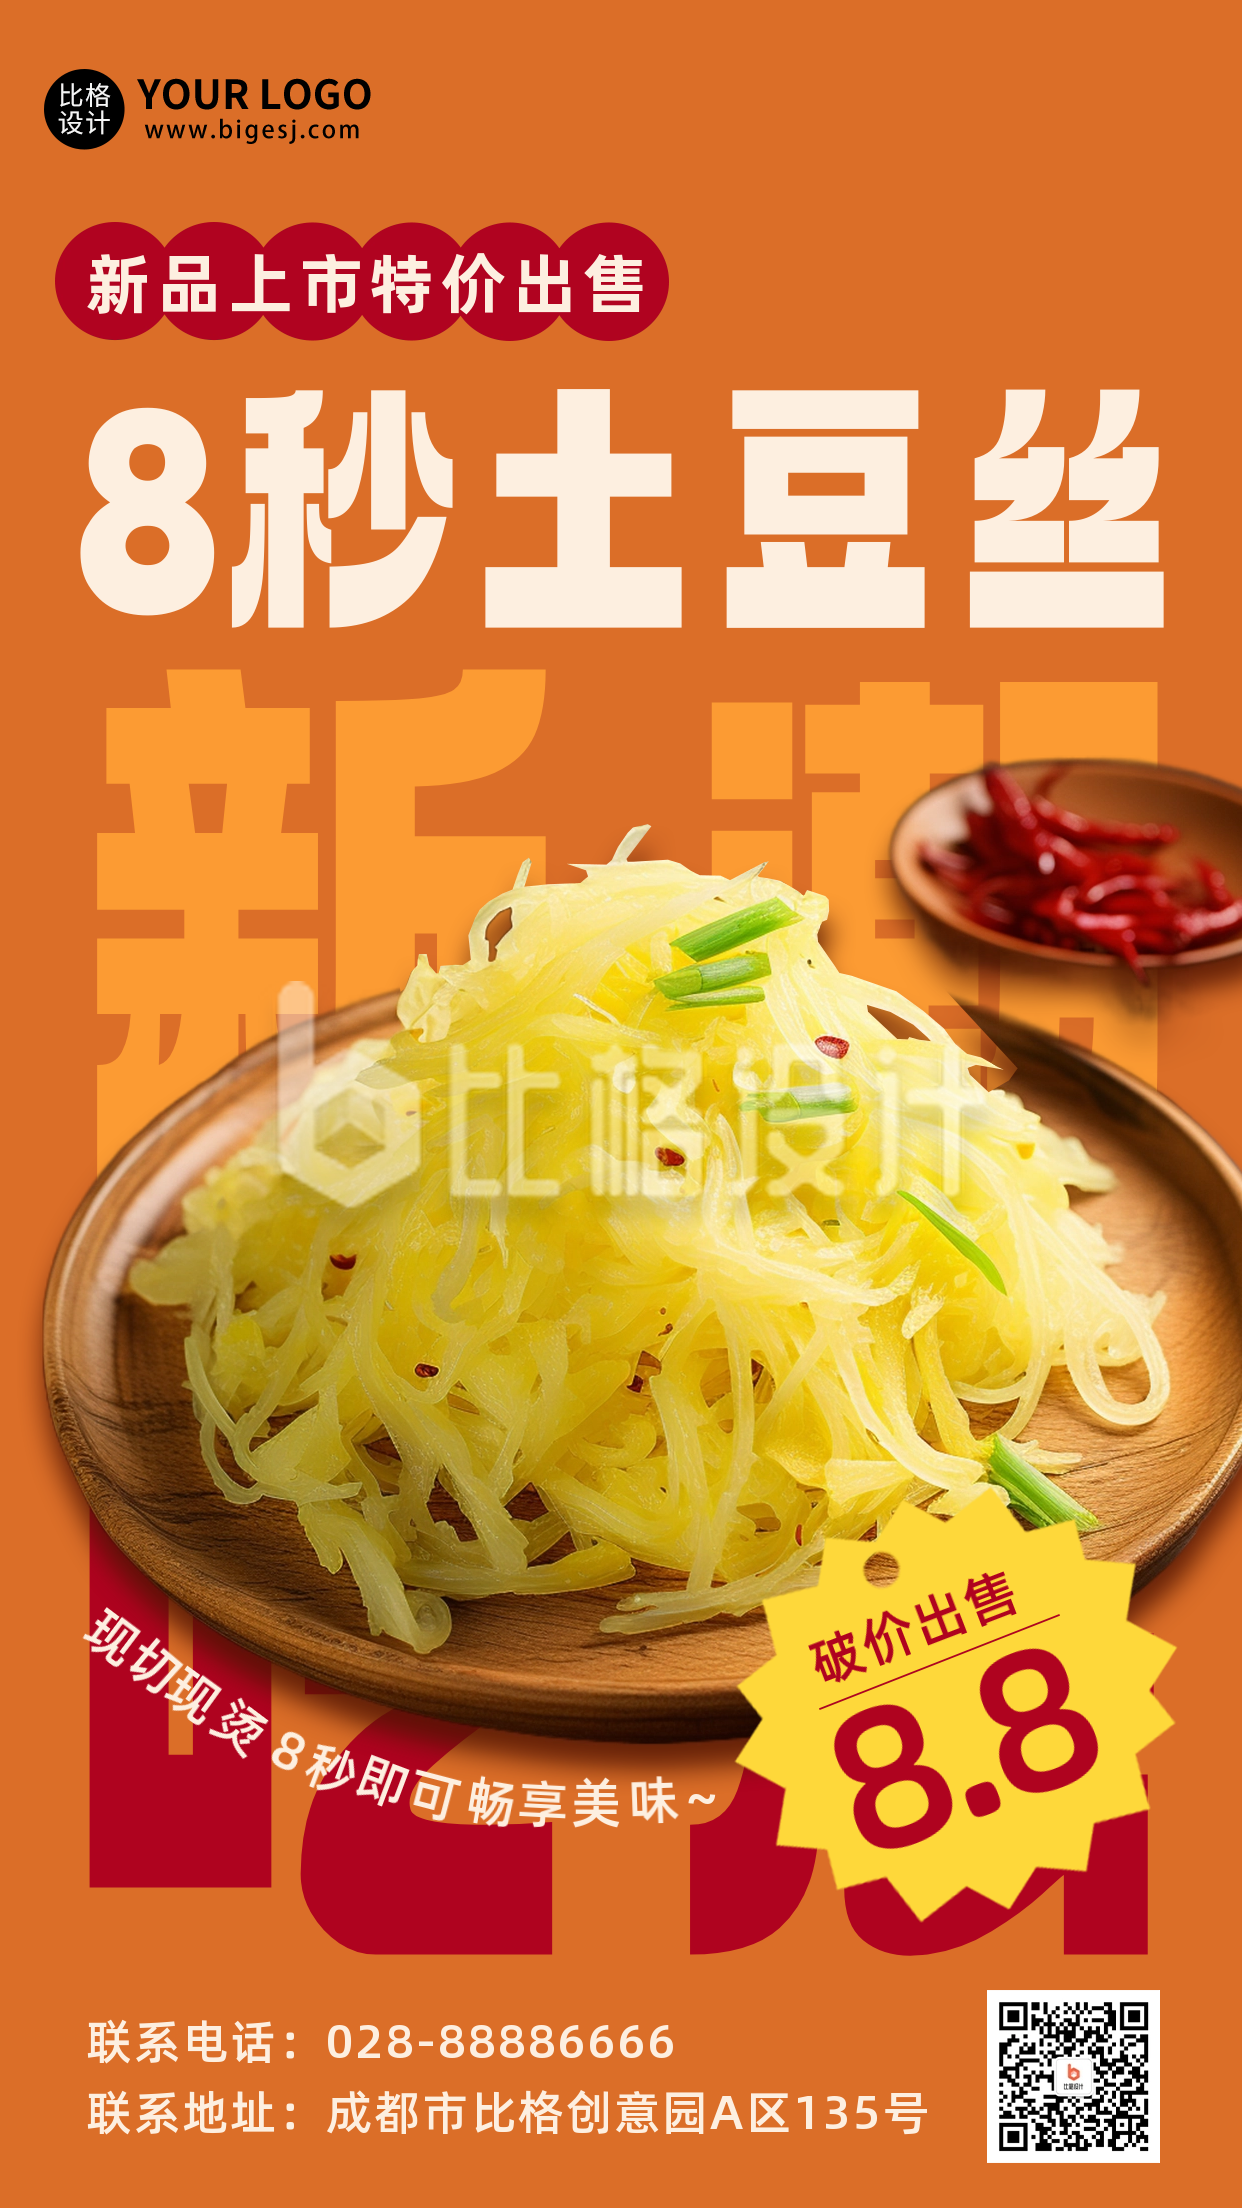 中餐美食新品上市促销宣传海报